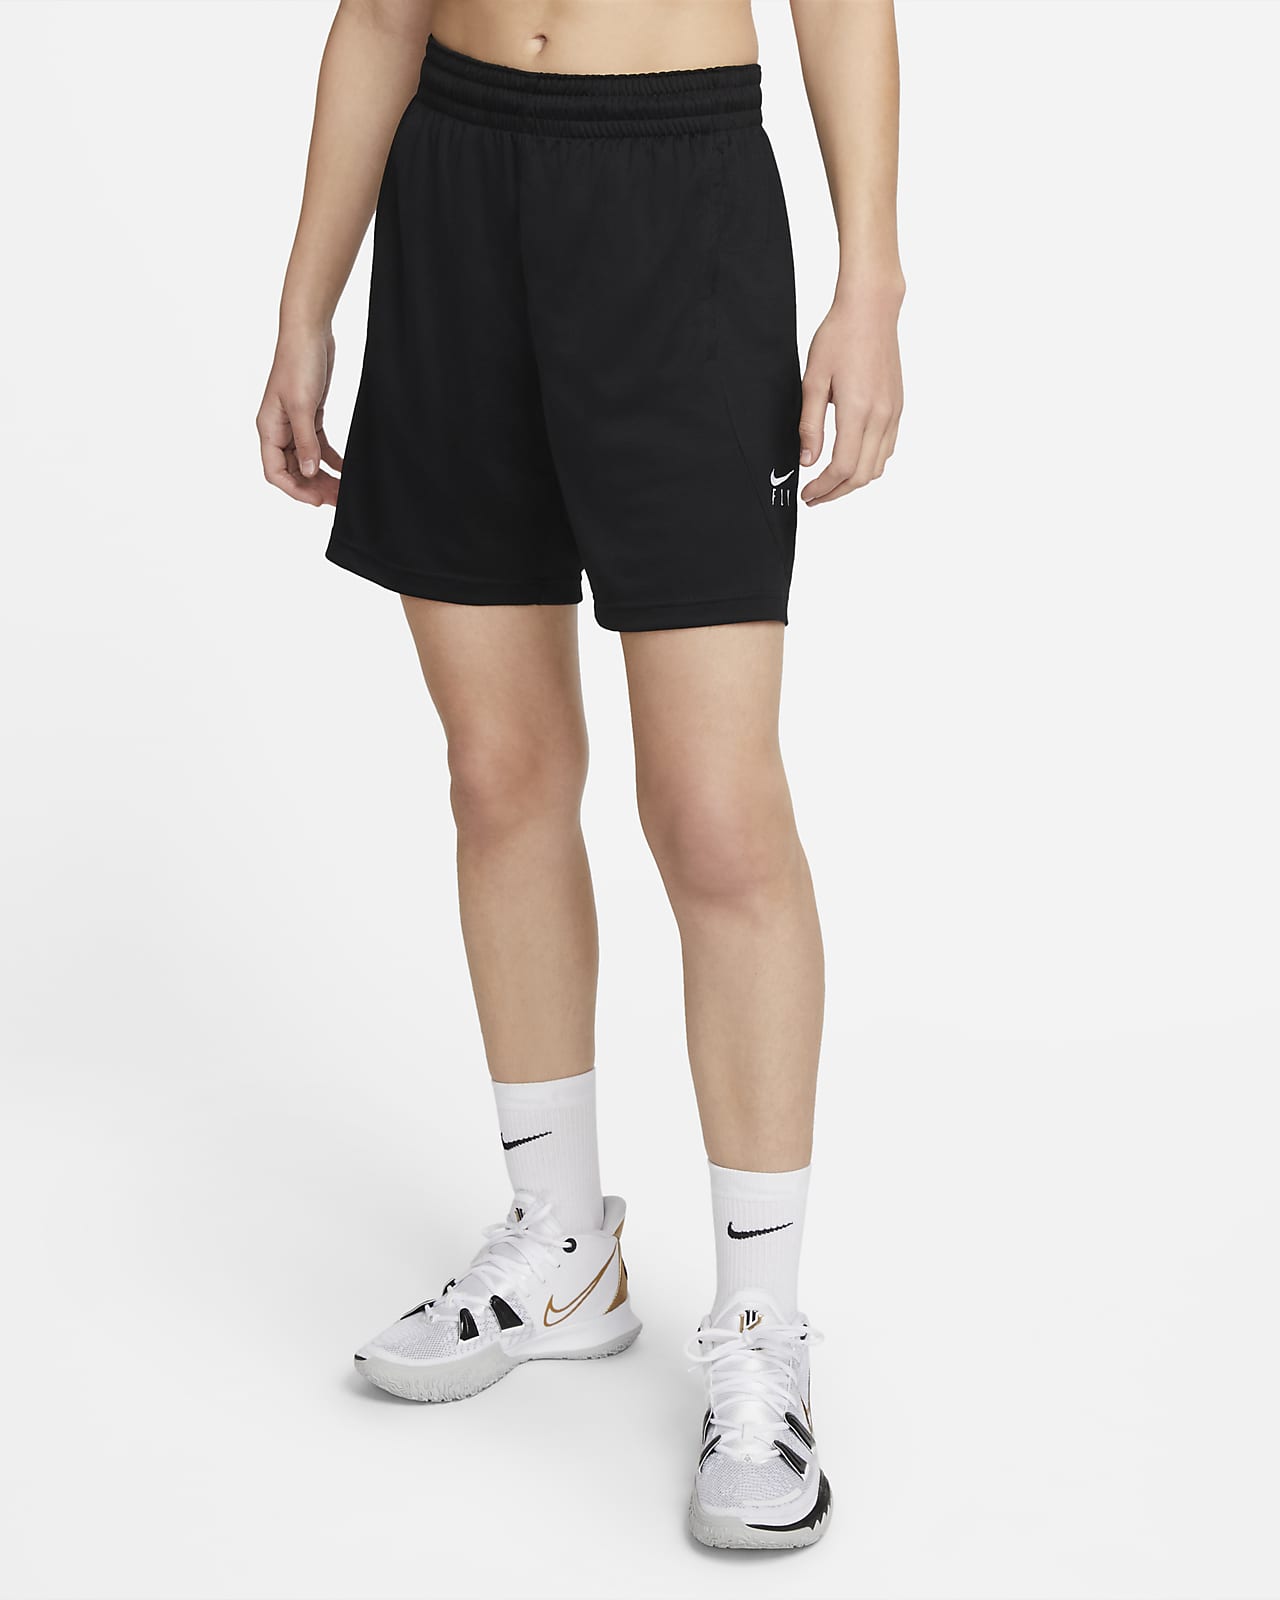 Shorts de básquetbol para mujer Nike Dri-FIT Fly